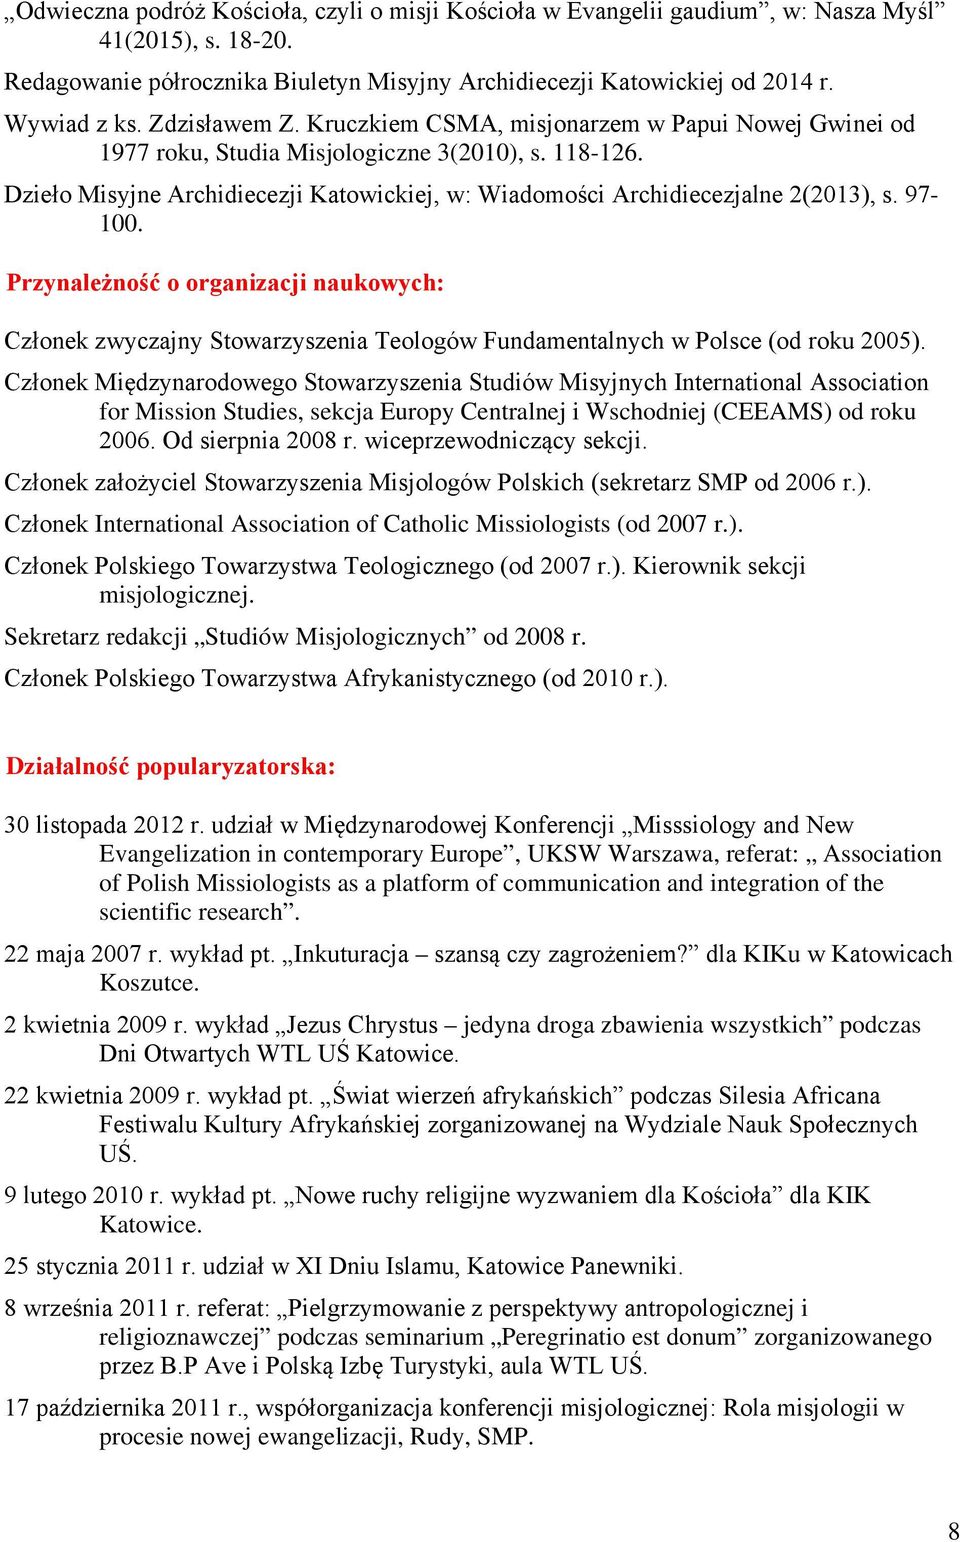 Dzieło Misyjne Archidiecezji Katowickiej, w: Wiadomości Archidiecezjalne 2(2013), s. 97-100.